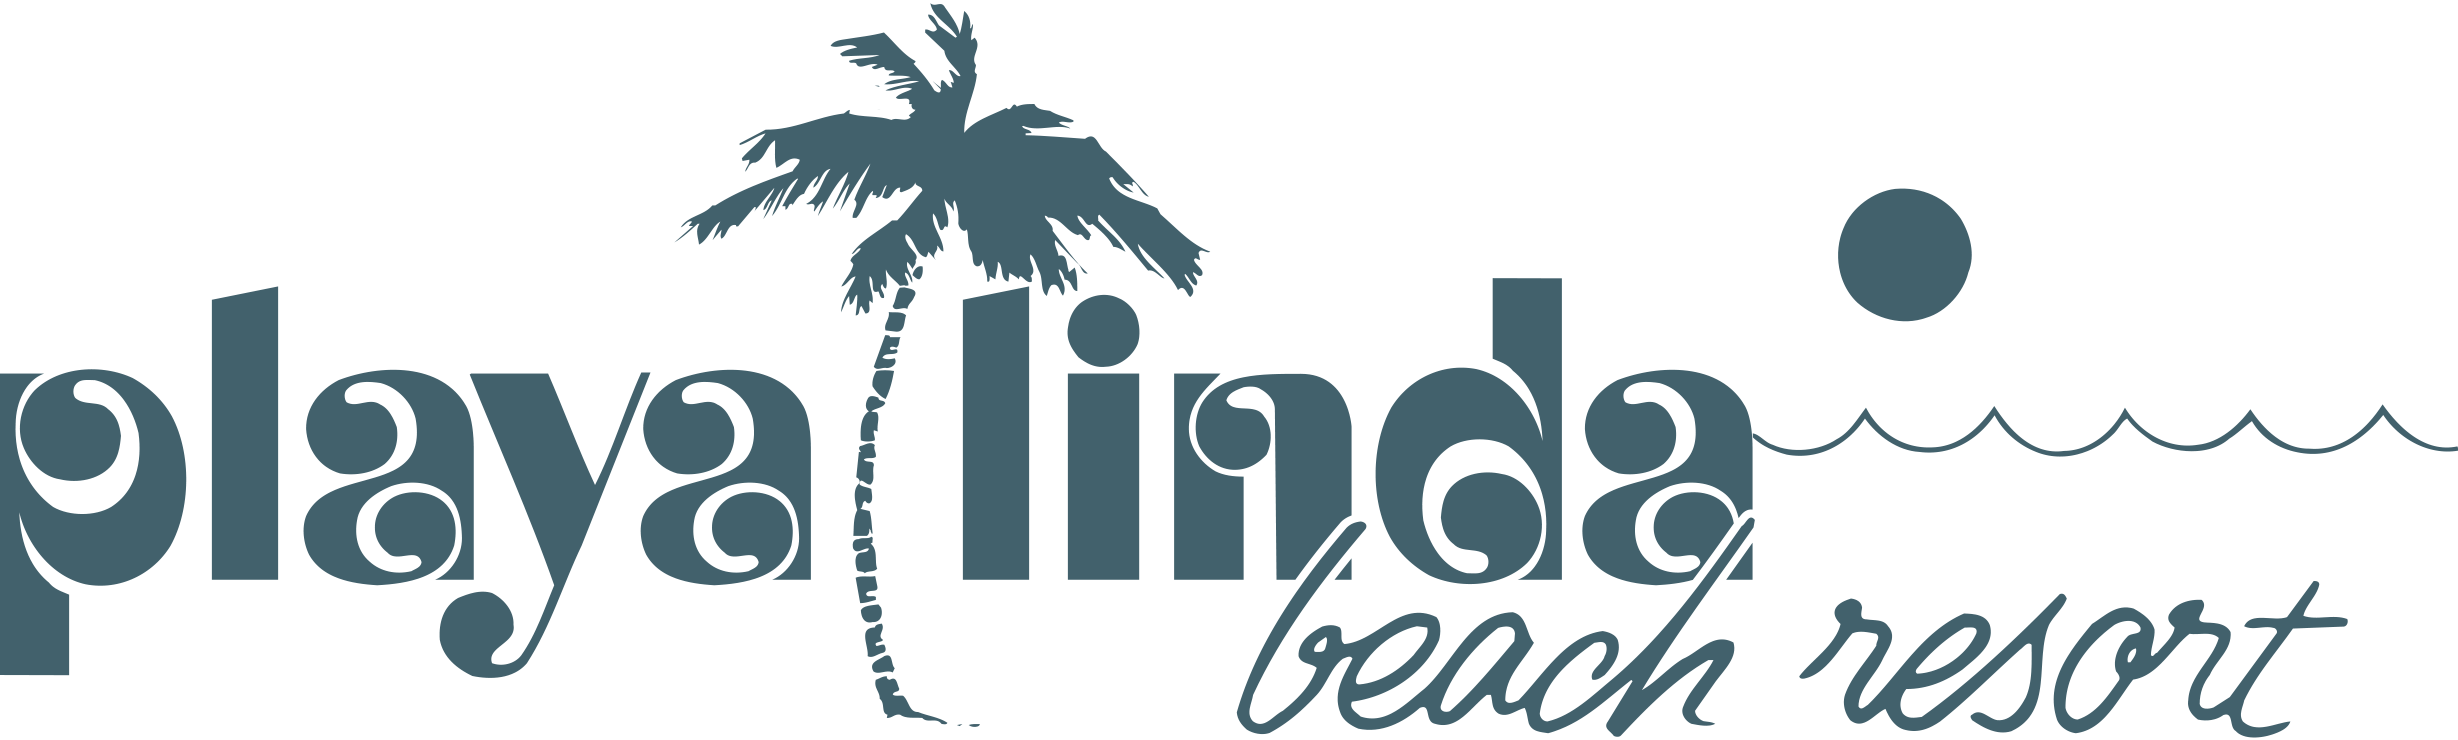 logo_Playa_Linda_Beach_Resort_Jun21478_highres